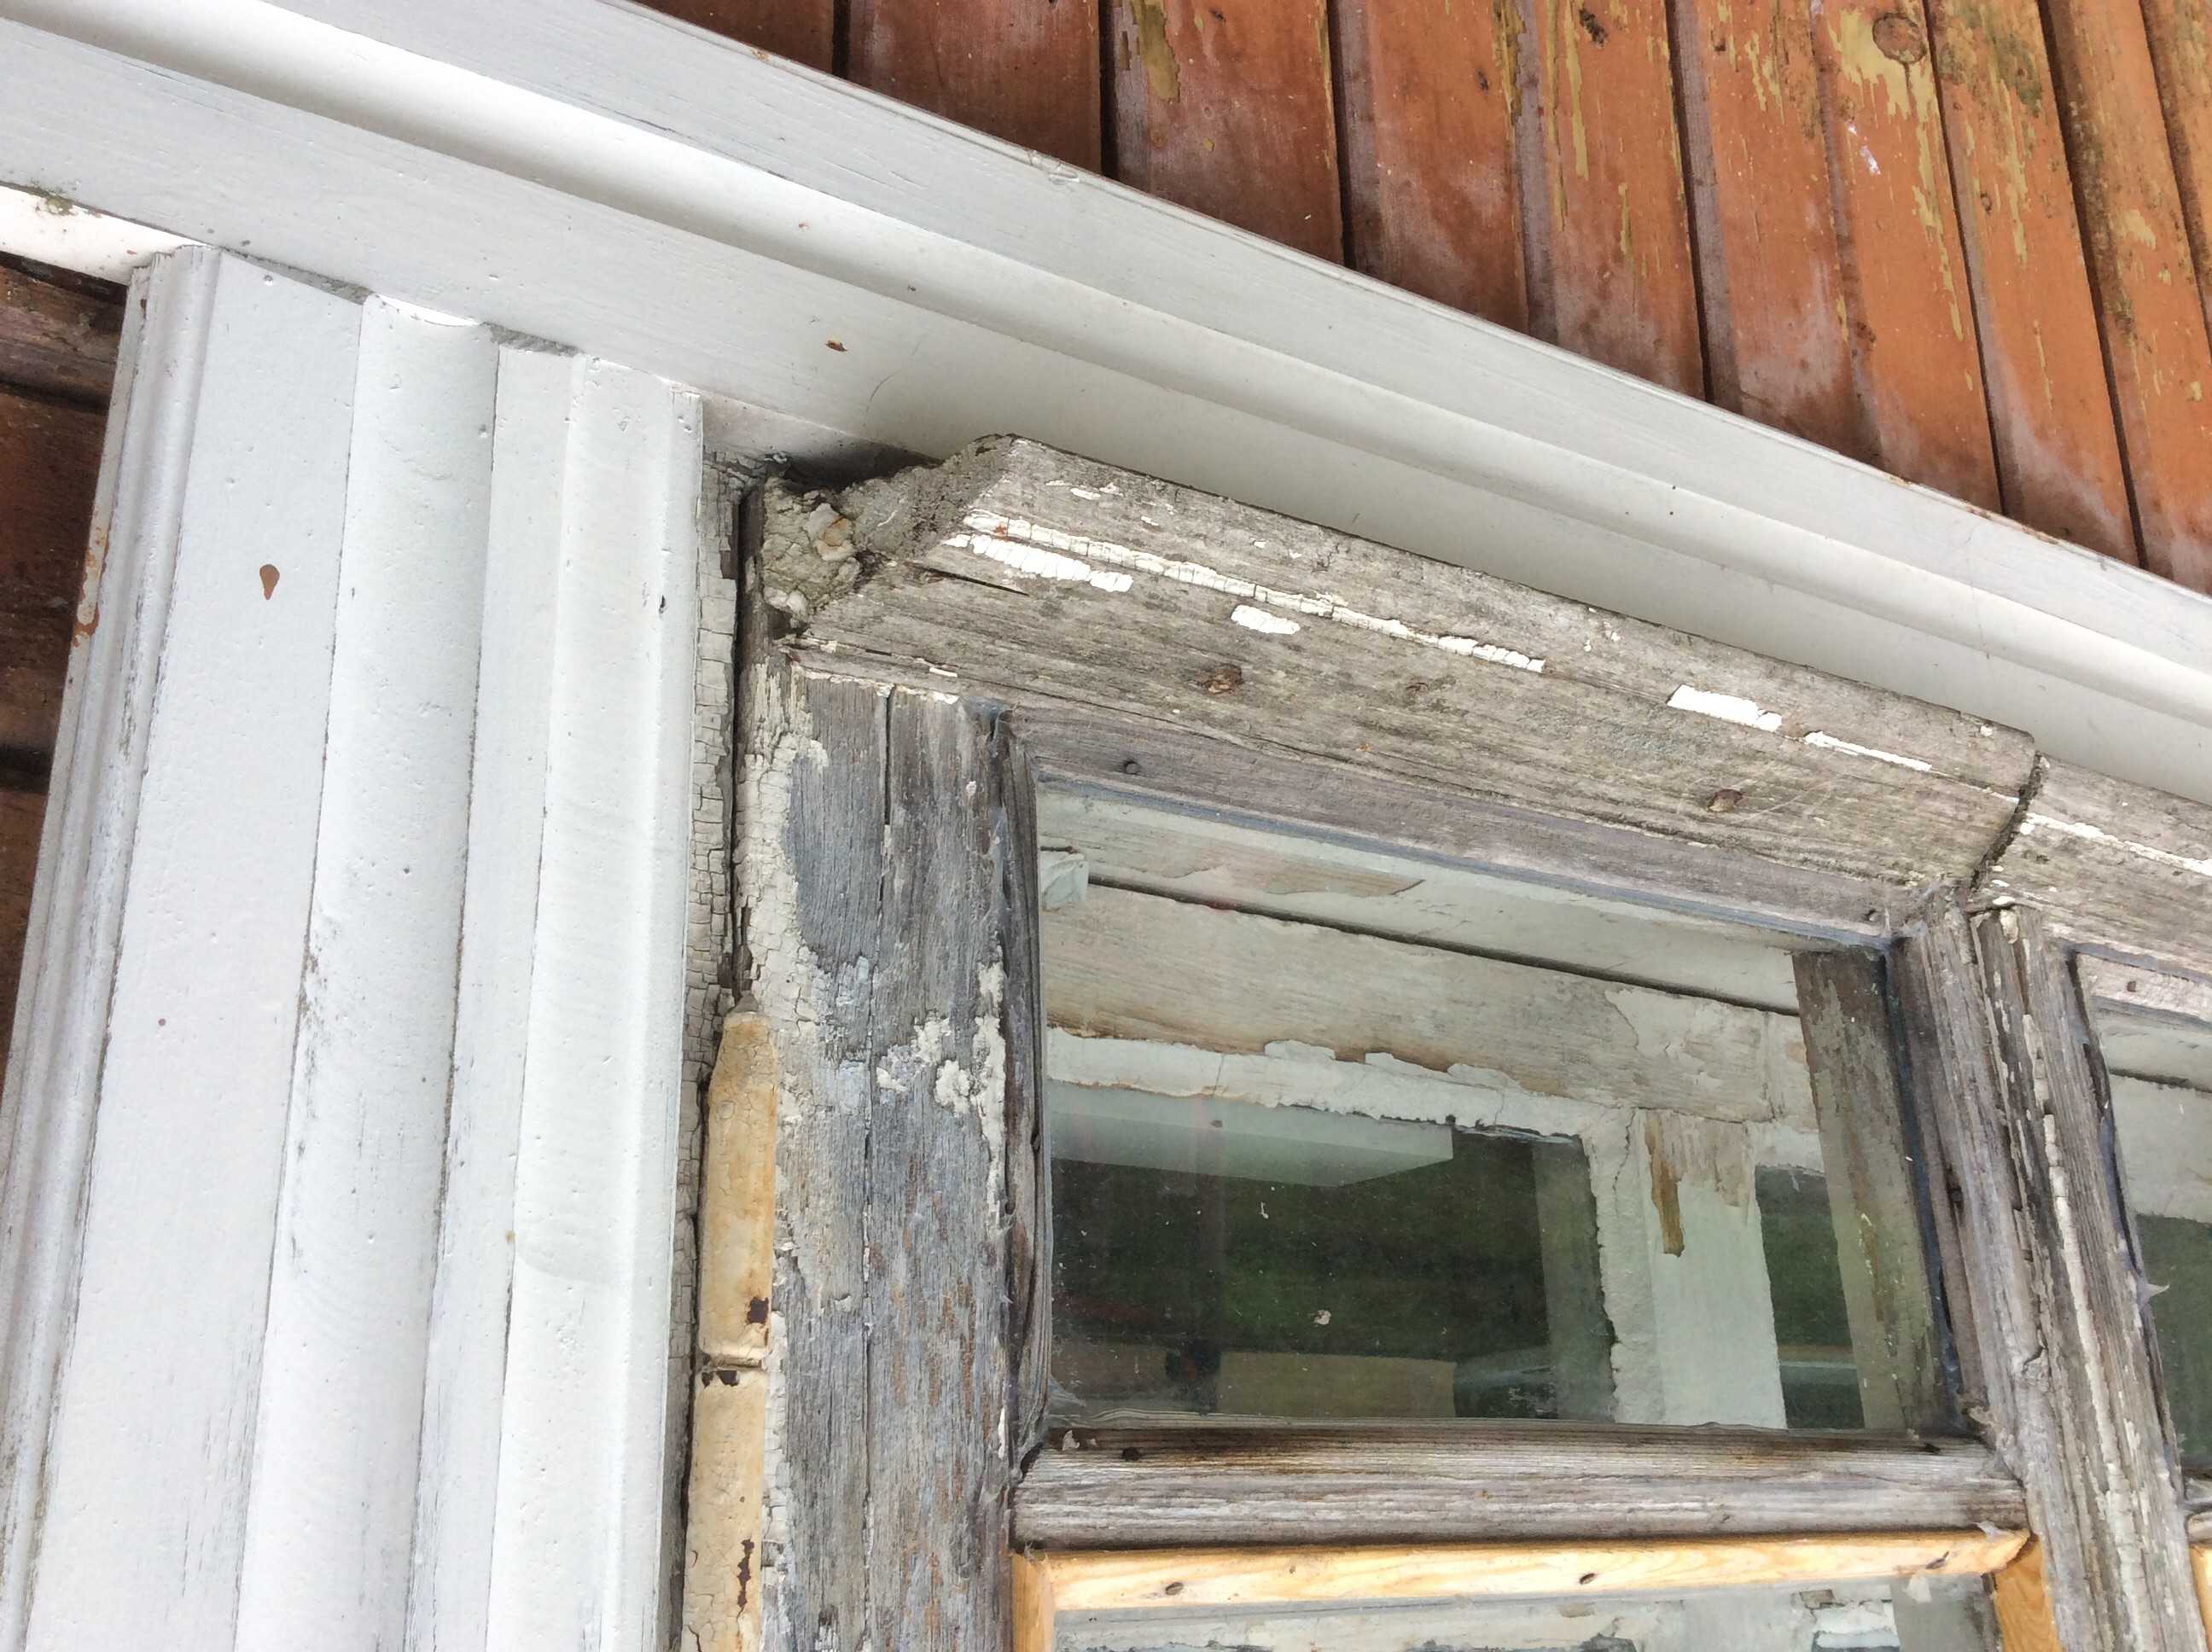 Как правильно сделать ремонт деревянного окна своими руками: пошагово- обзор +видео